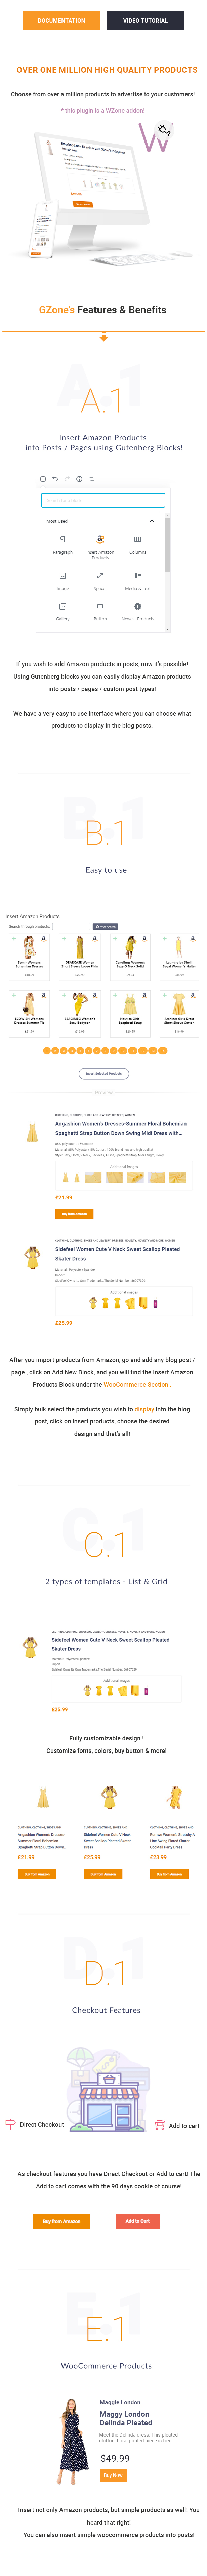 GZone - Fügen Sie Amazon / WooCommerce-Produkte in Posts / Pages ein - 1